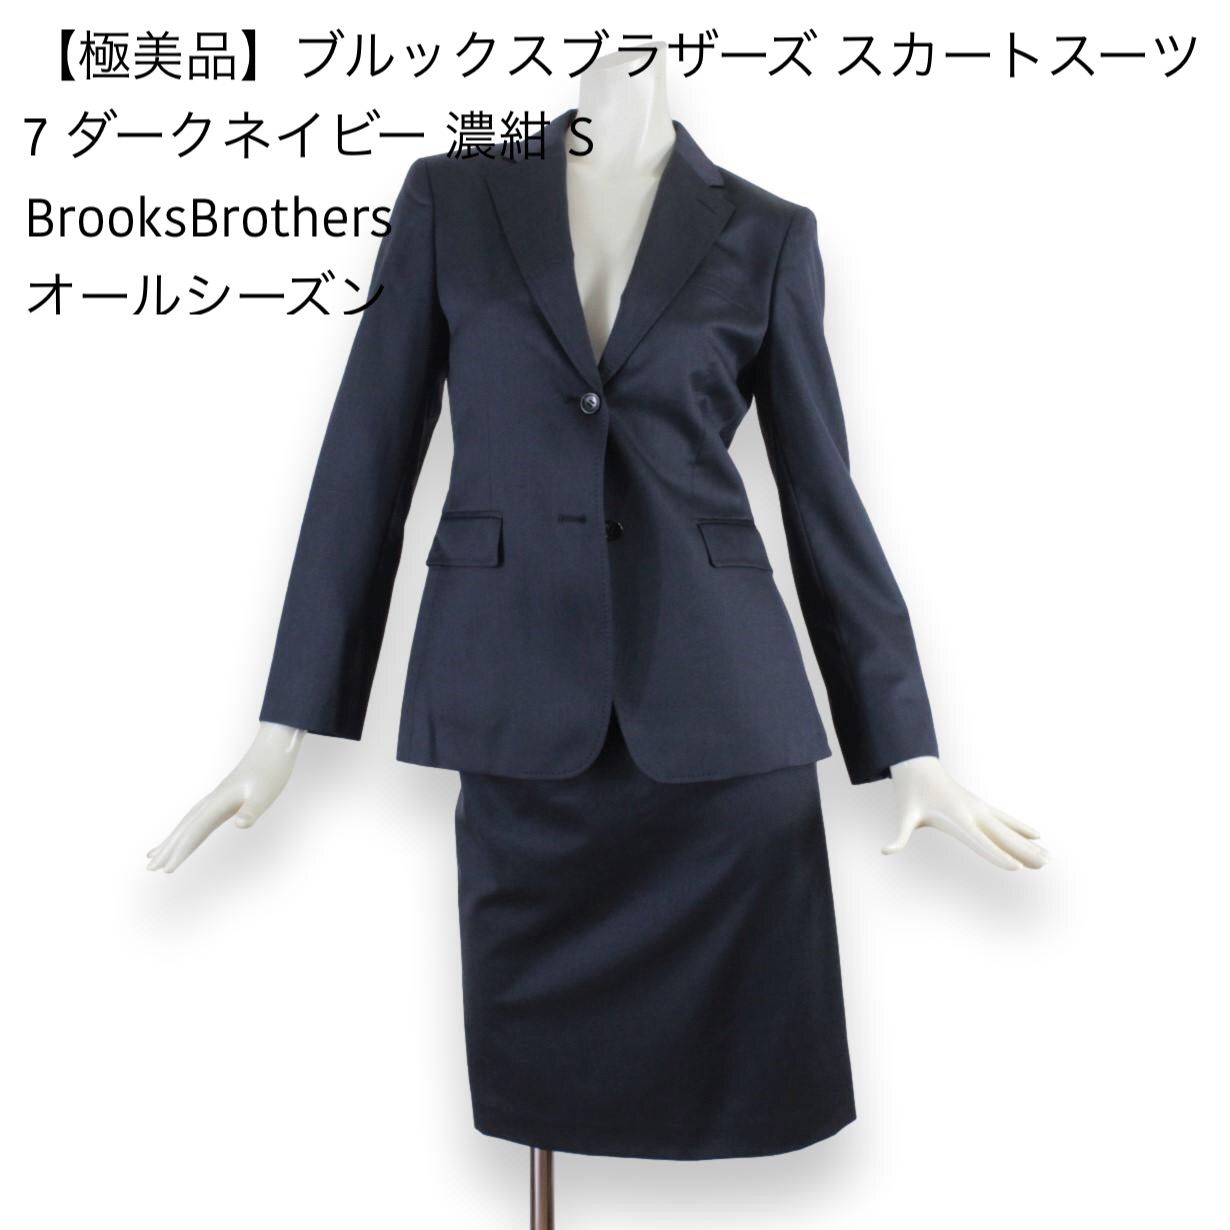 01【極美品】ブルックスブラザーズ スカートスーツ 7 ダークネイビー